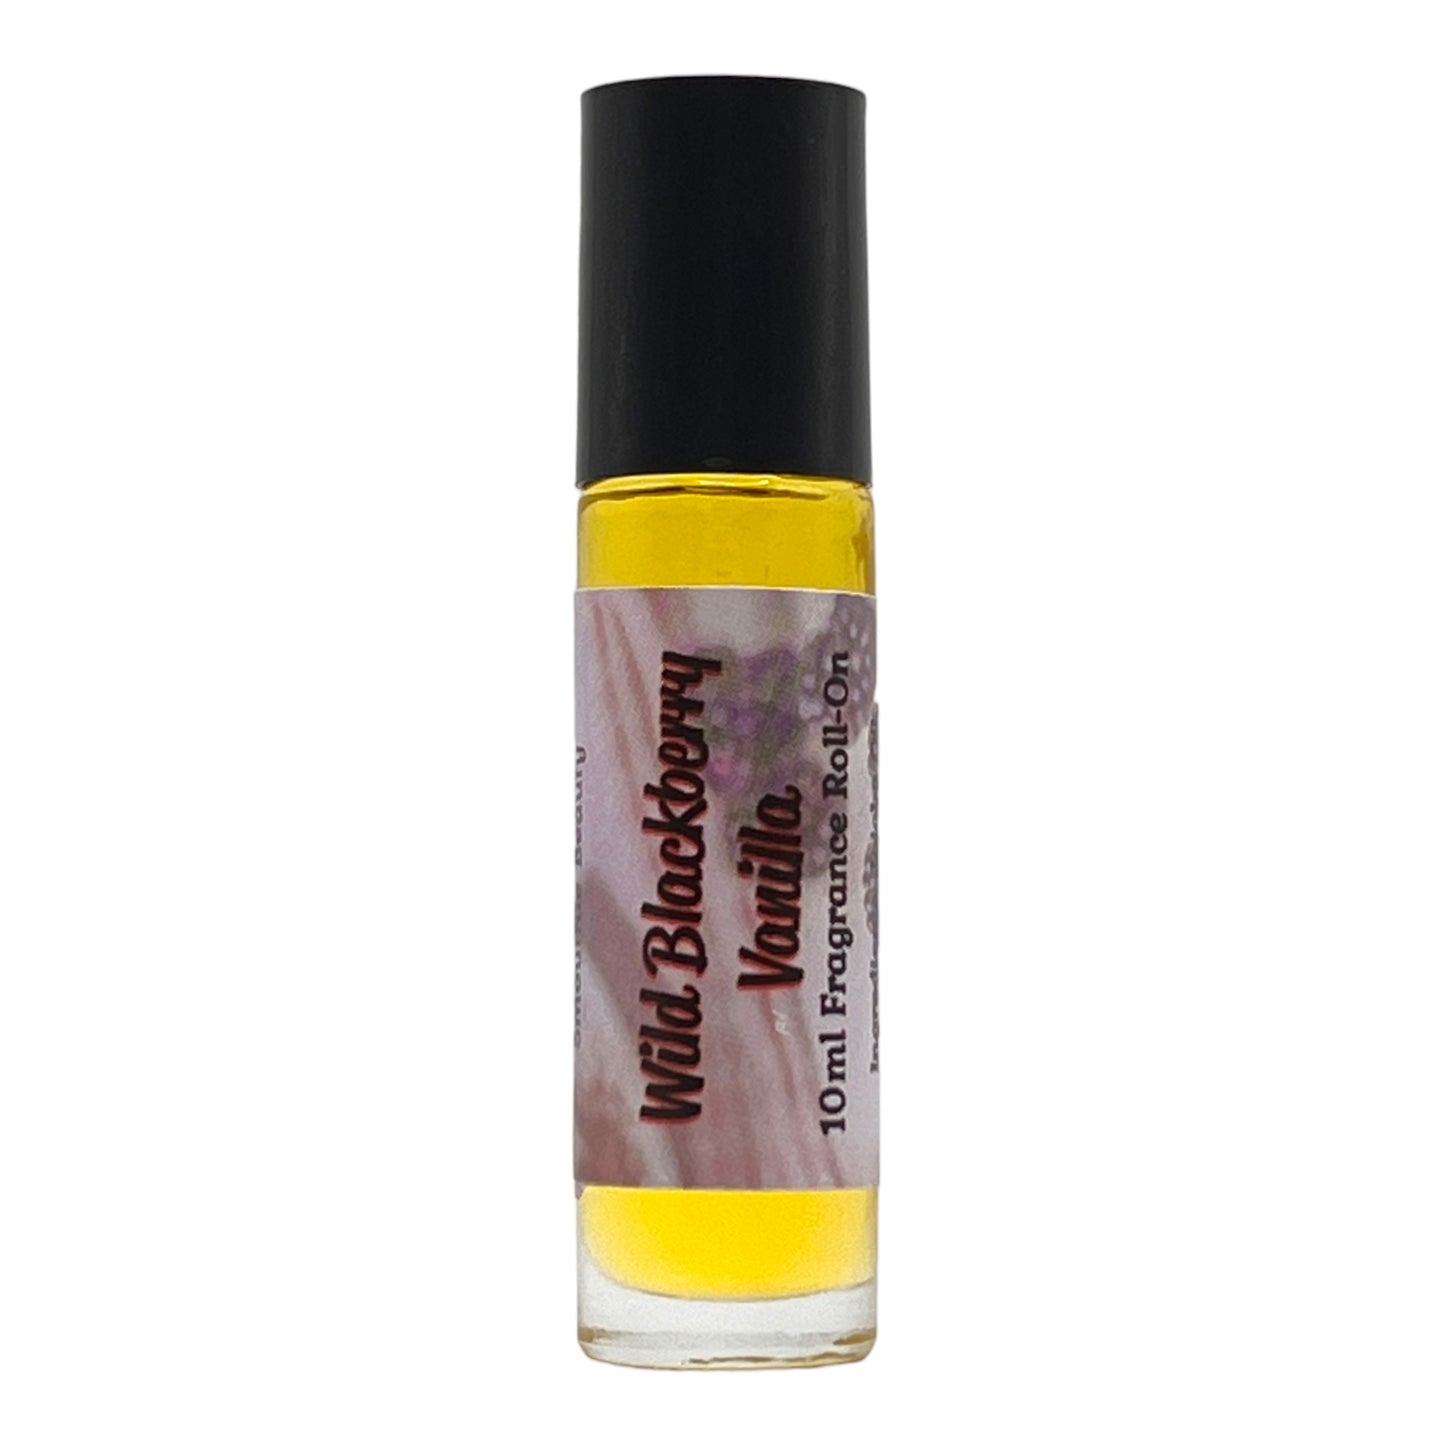 Wild Blackberry Vanilla Perfume Oil Fragrance Roll On